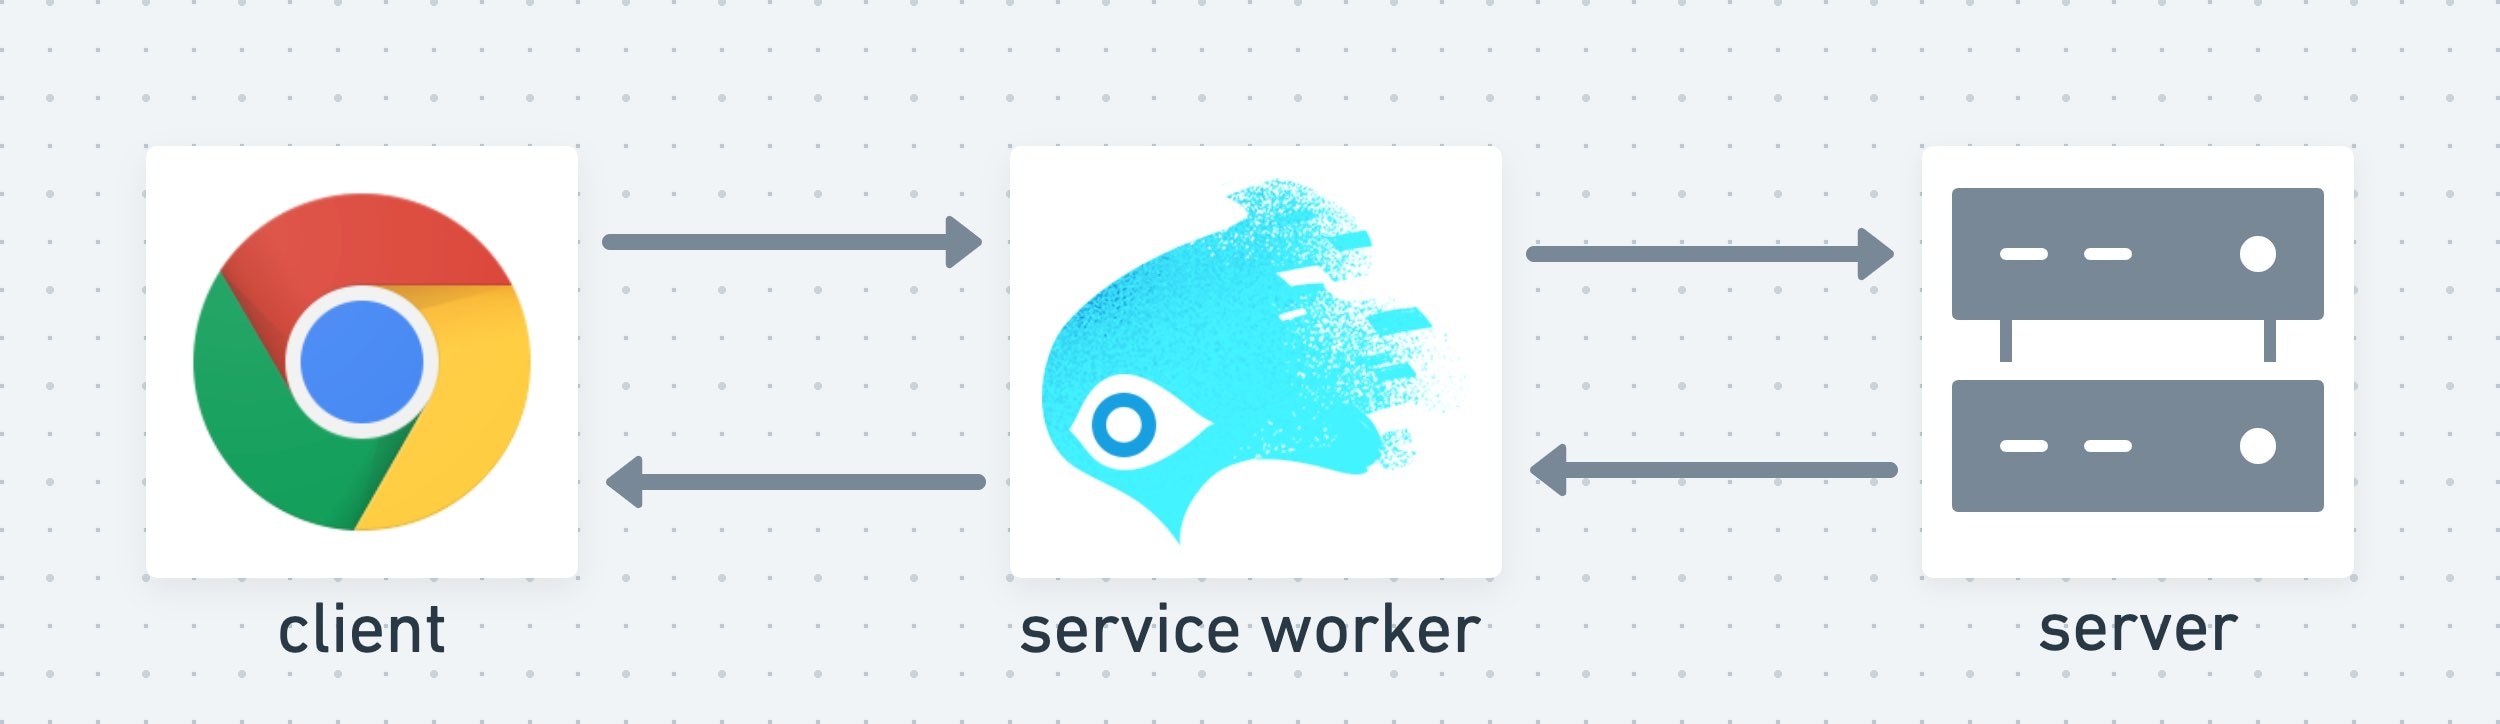 Service worker đóng vai trò là lớp trung gian giữa ứng dụng và máy chủ